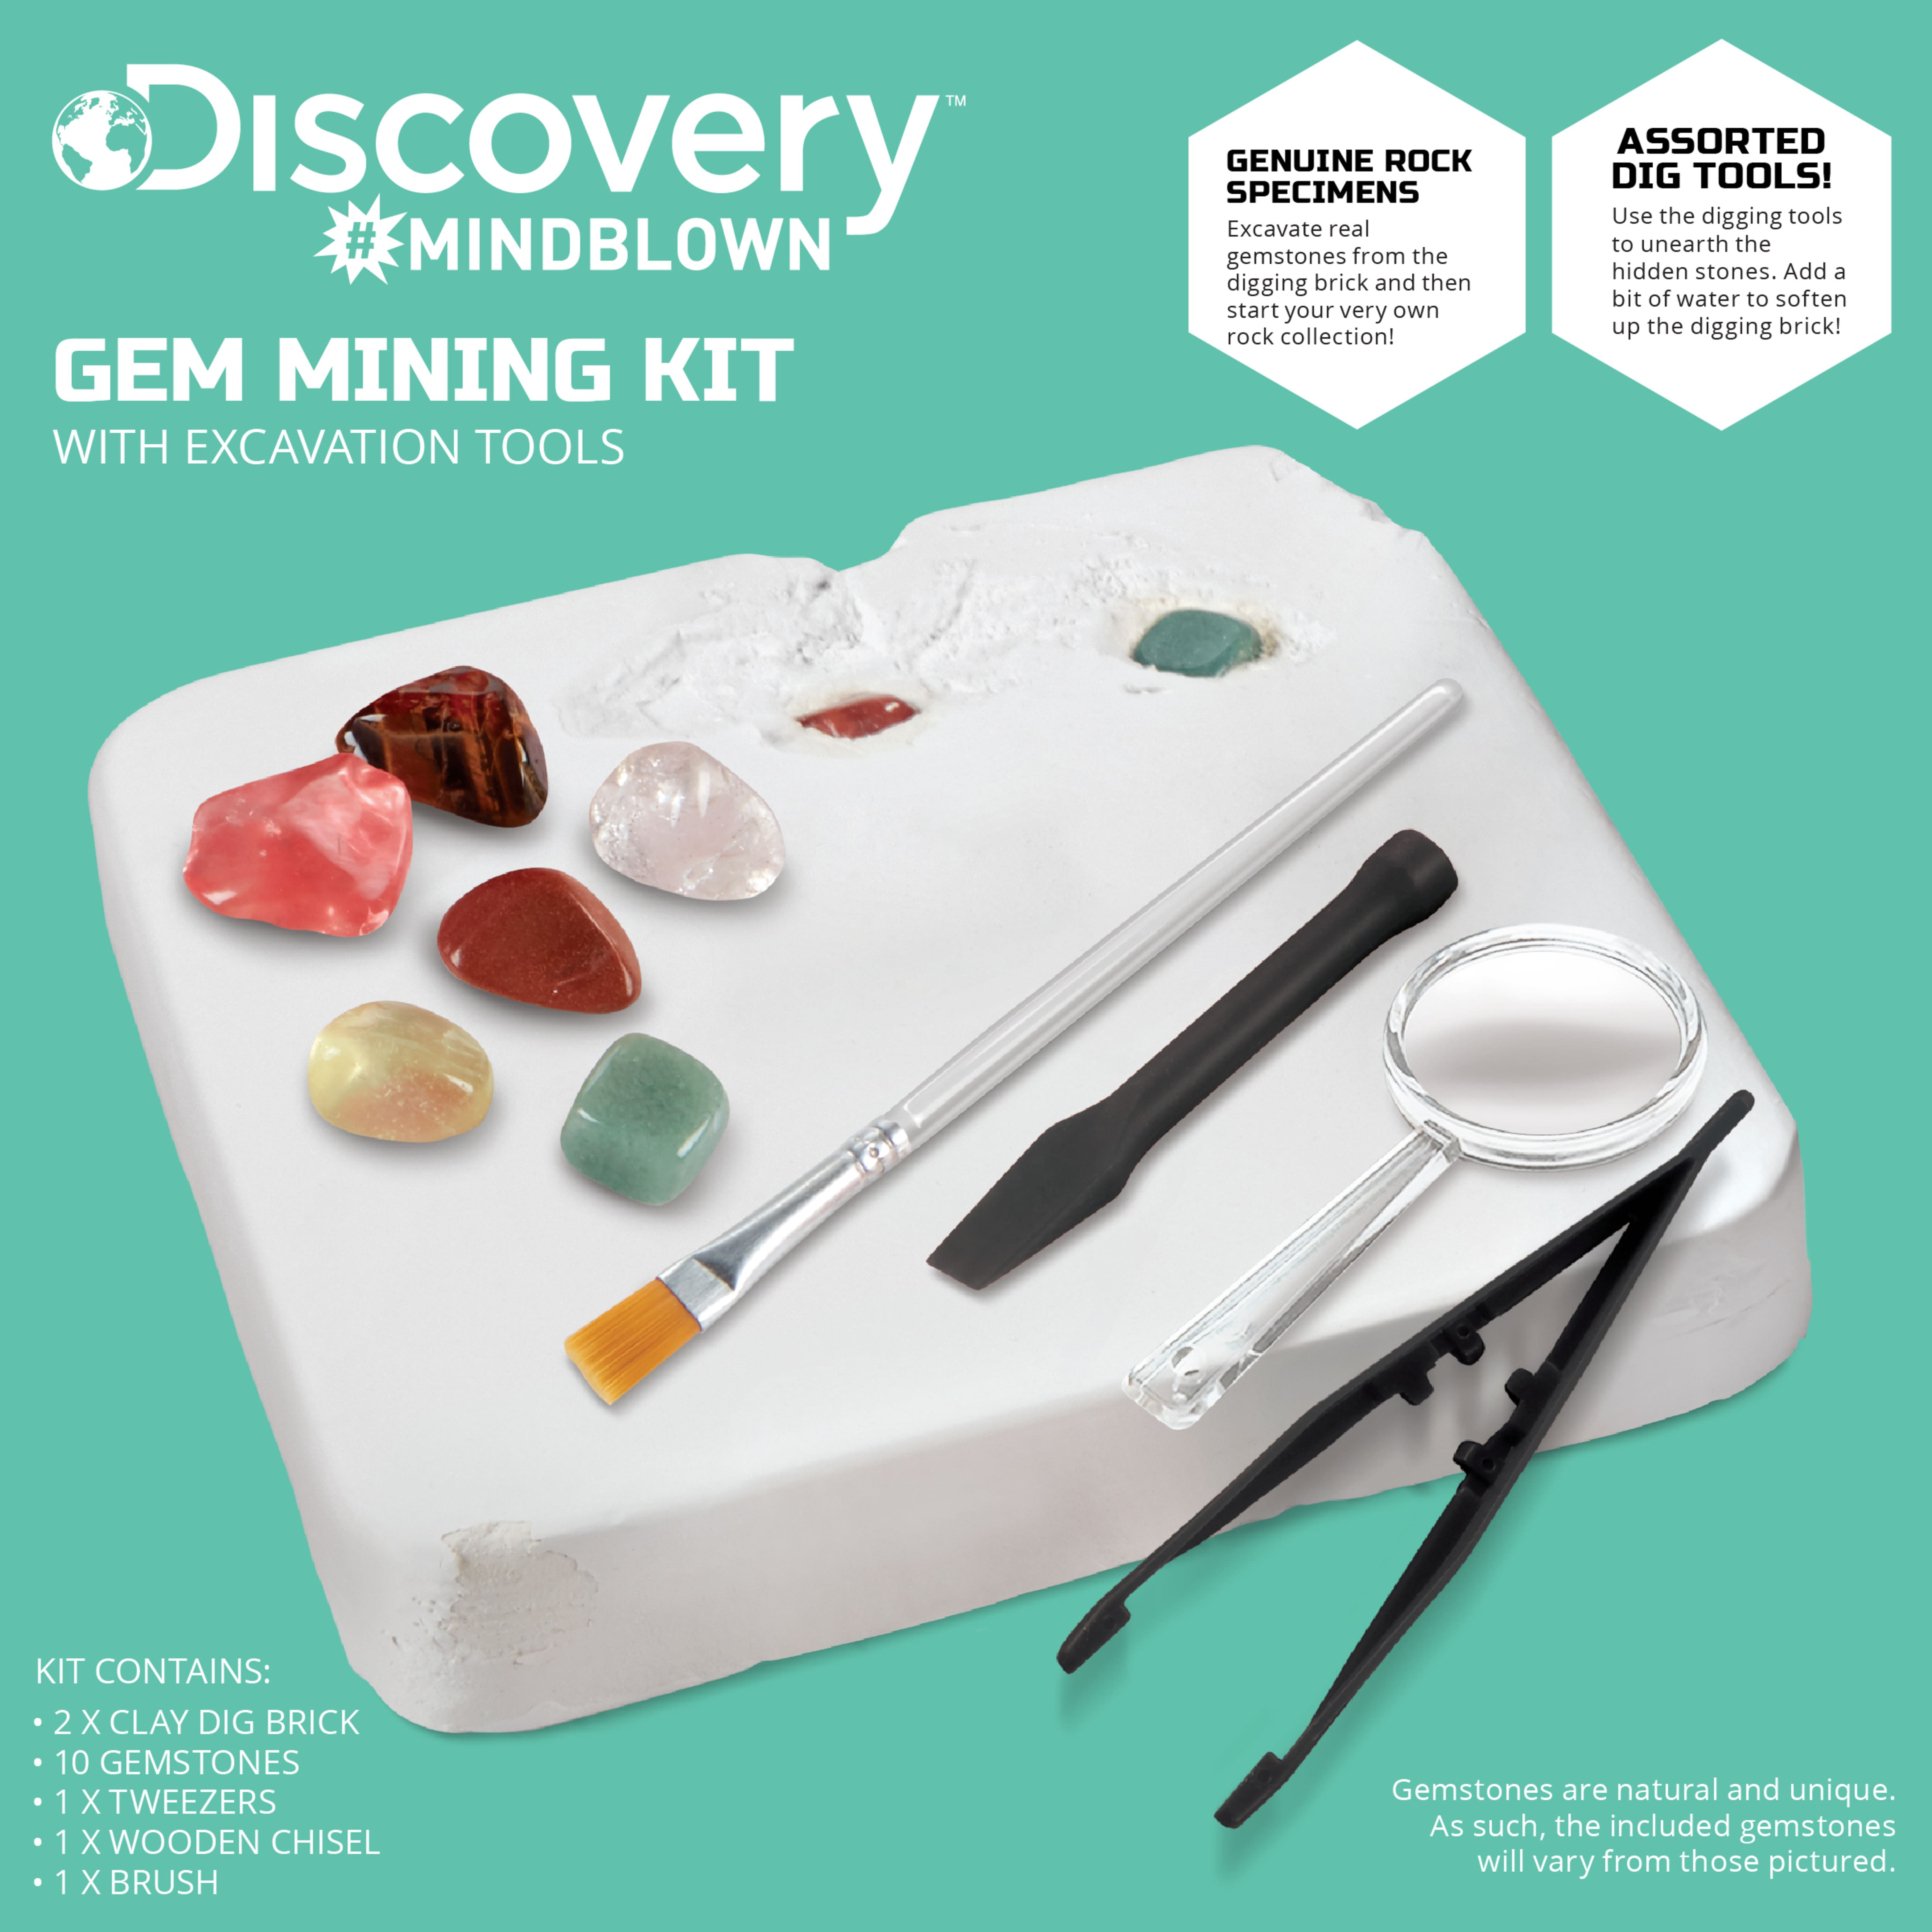 Discovery&#x2122; Mindblown Gem Mining Kit